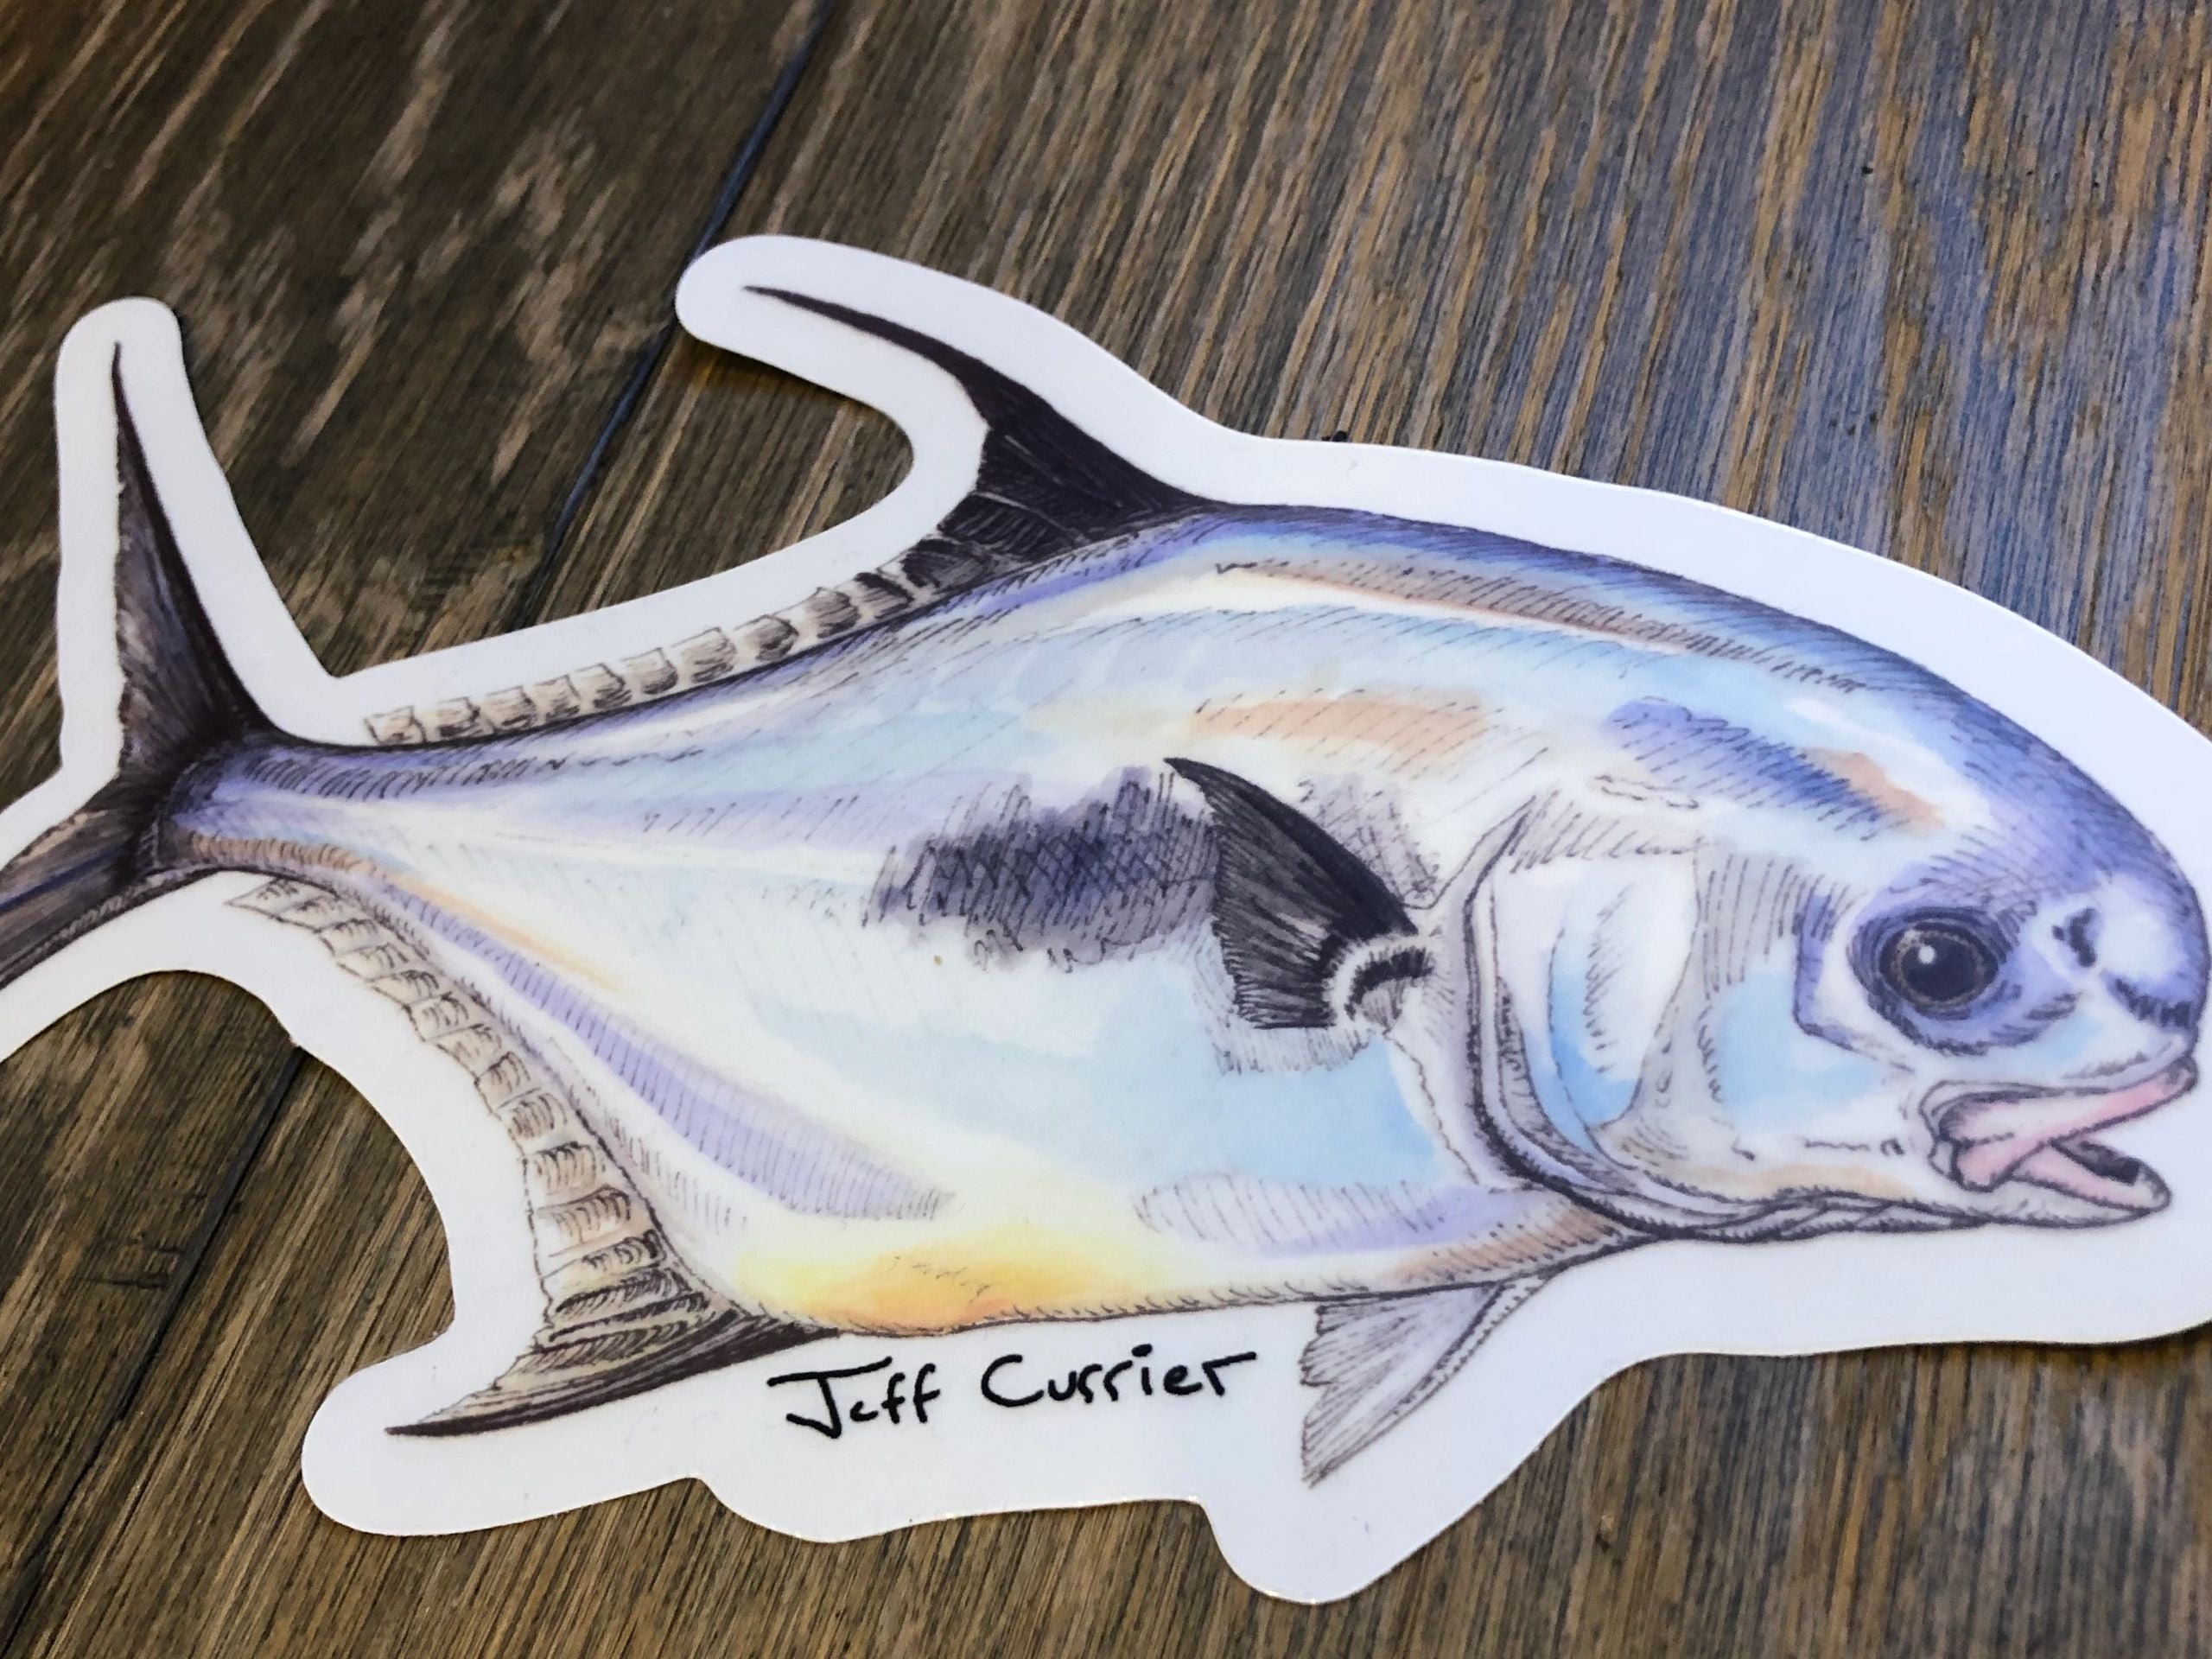 JEFF CURRIER DESIGNED PREMIUM SALTWATER FLATS FISH DECALS